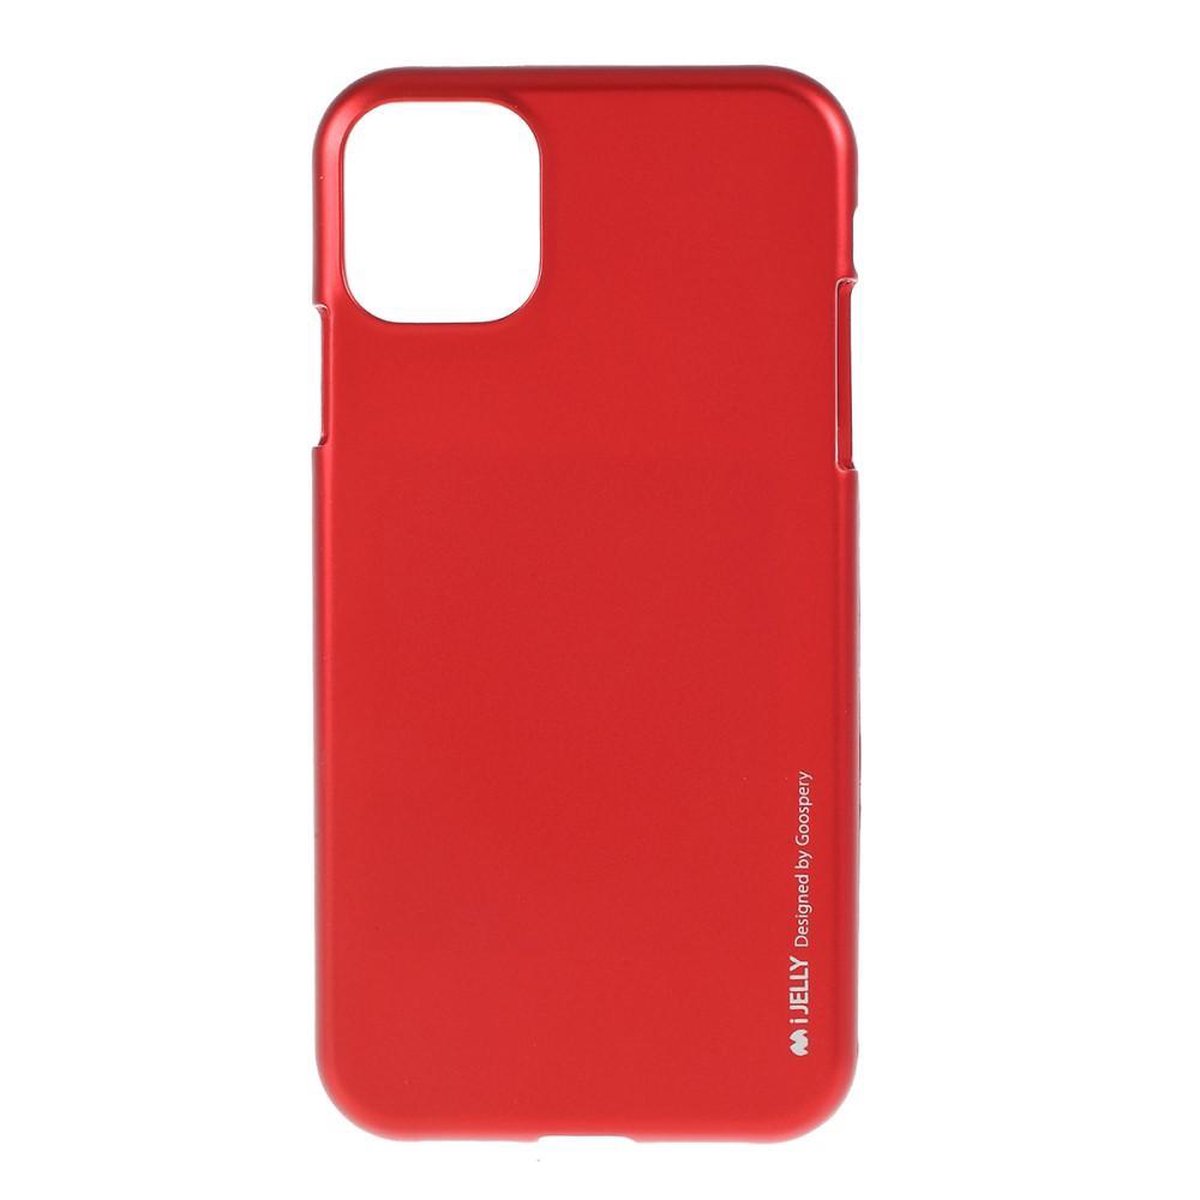 Flexibele Jelly iPhone cover voor iPhone 11 6.1 inch - Rood - Goospery